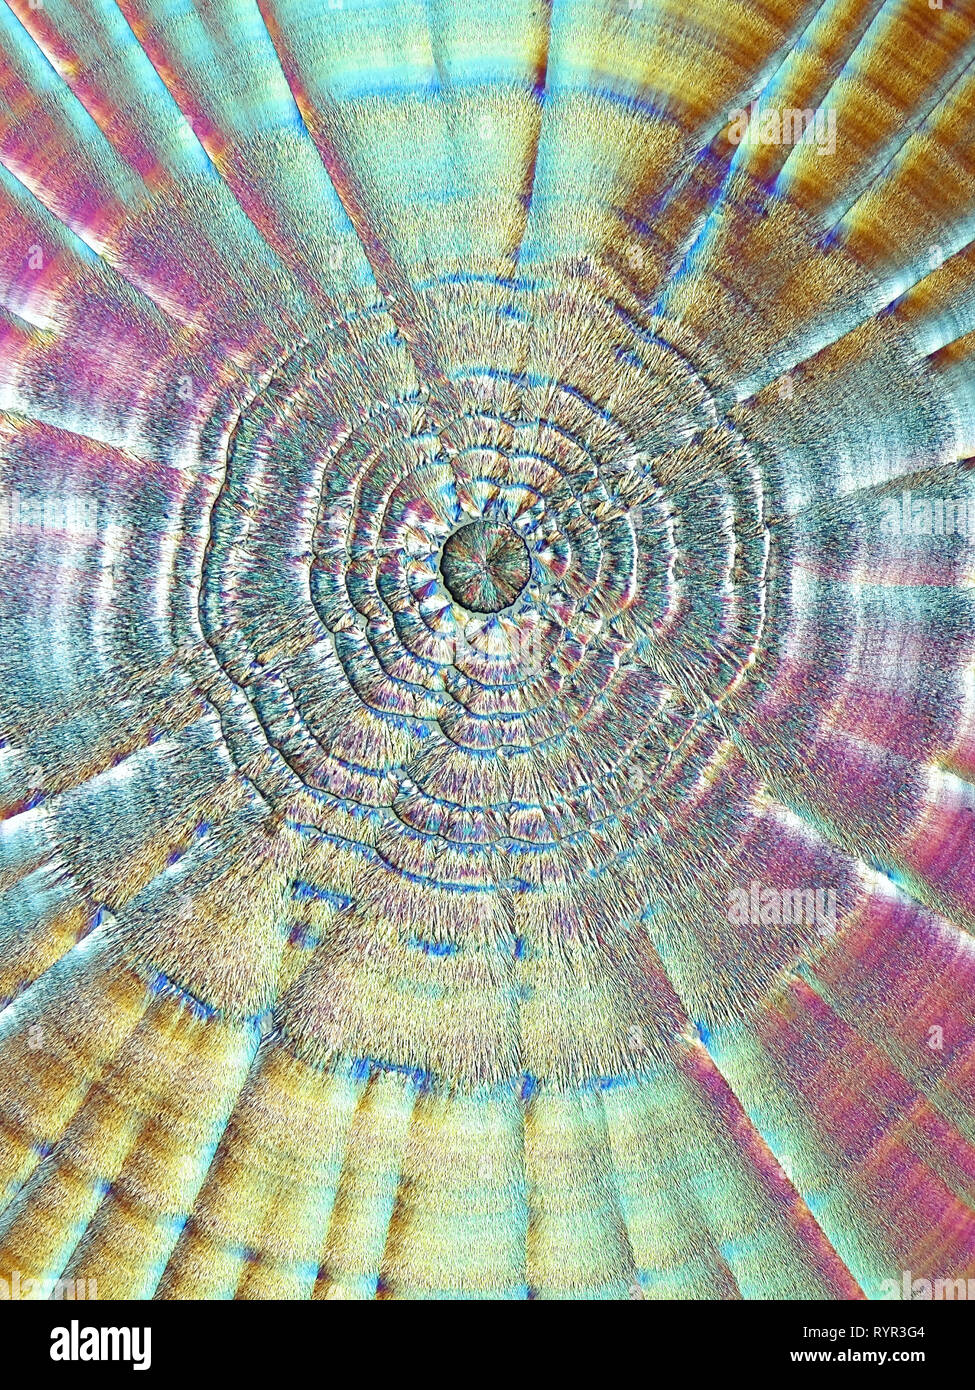 Chemische Technik Dies ist Ascorbinsäure, bekannt als Vitamin C, in kristallisierter Form fotografiert bekannt Stockfoto